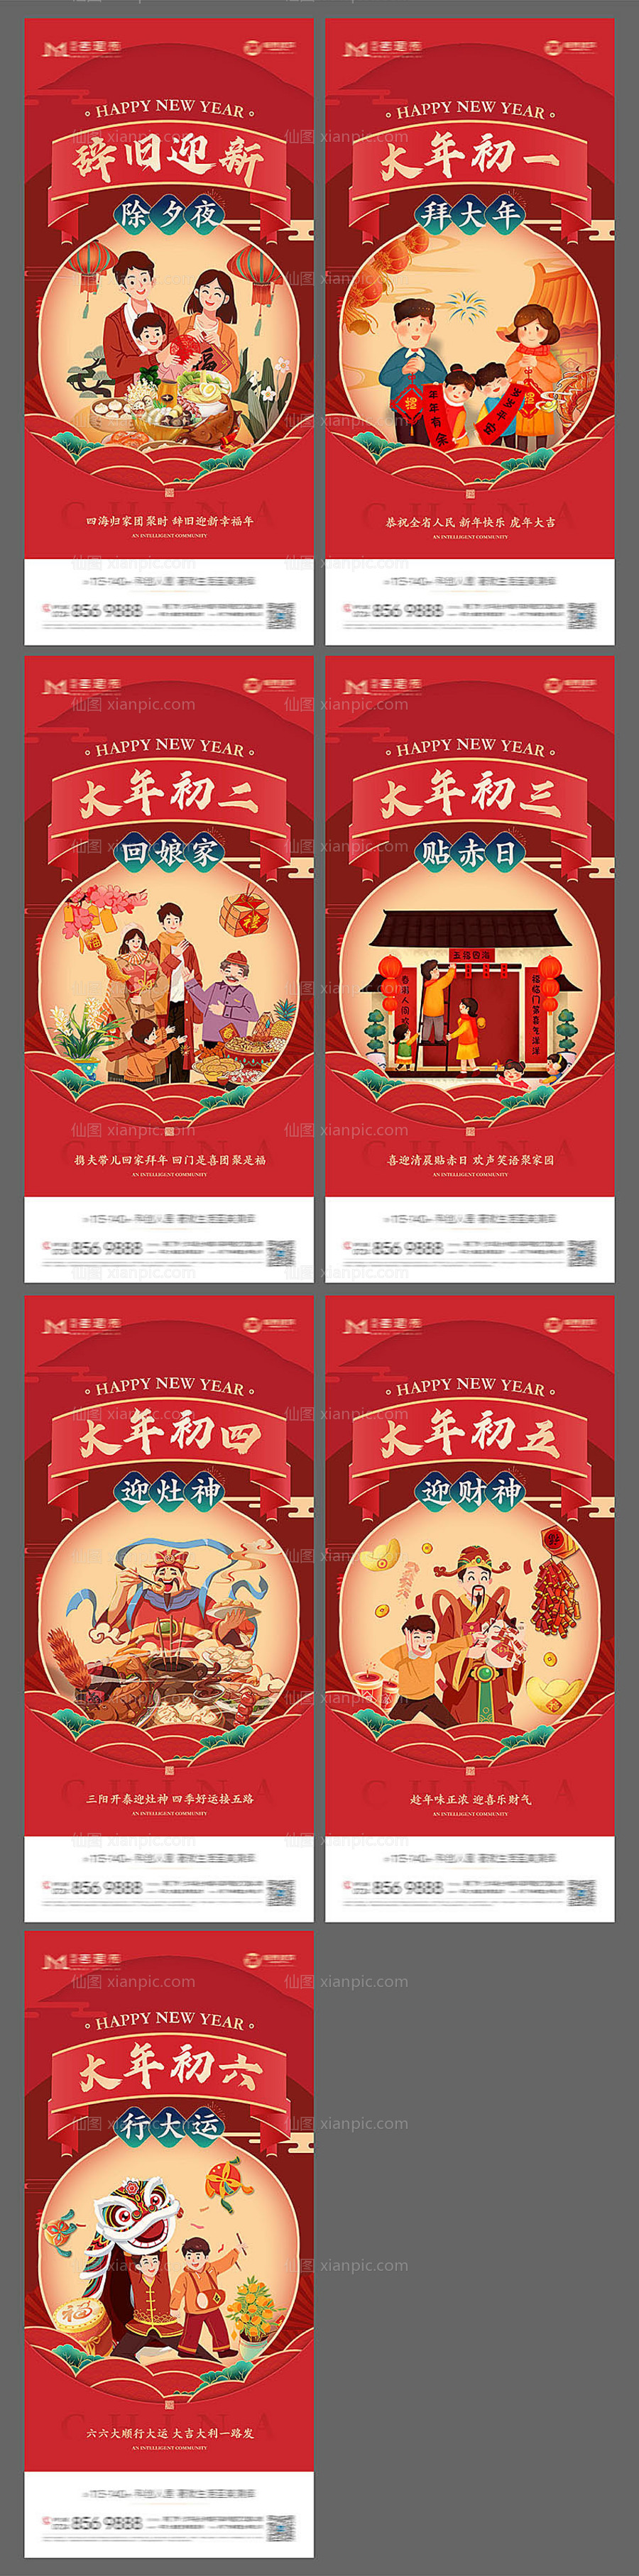 素材乐-春节年俗除夕初一到初六系列海报